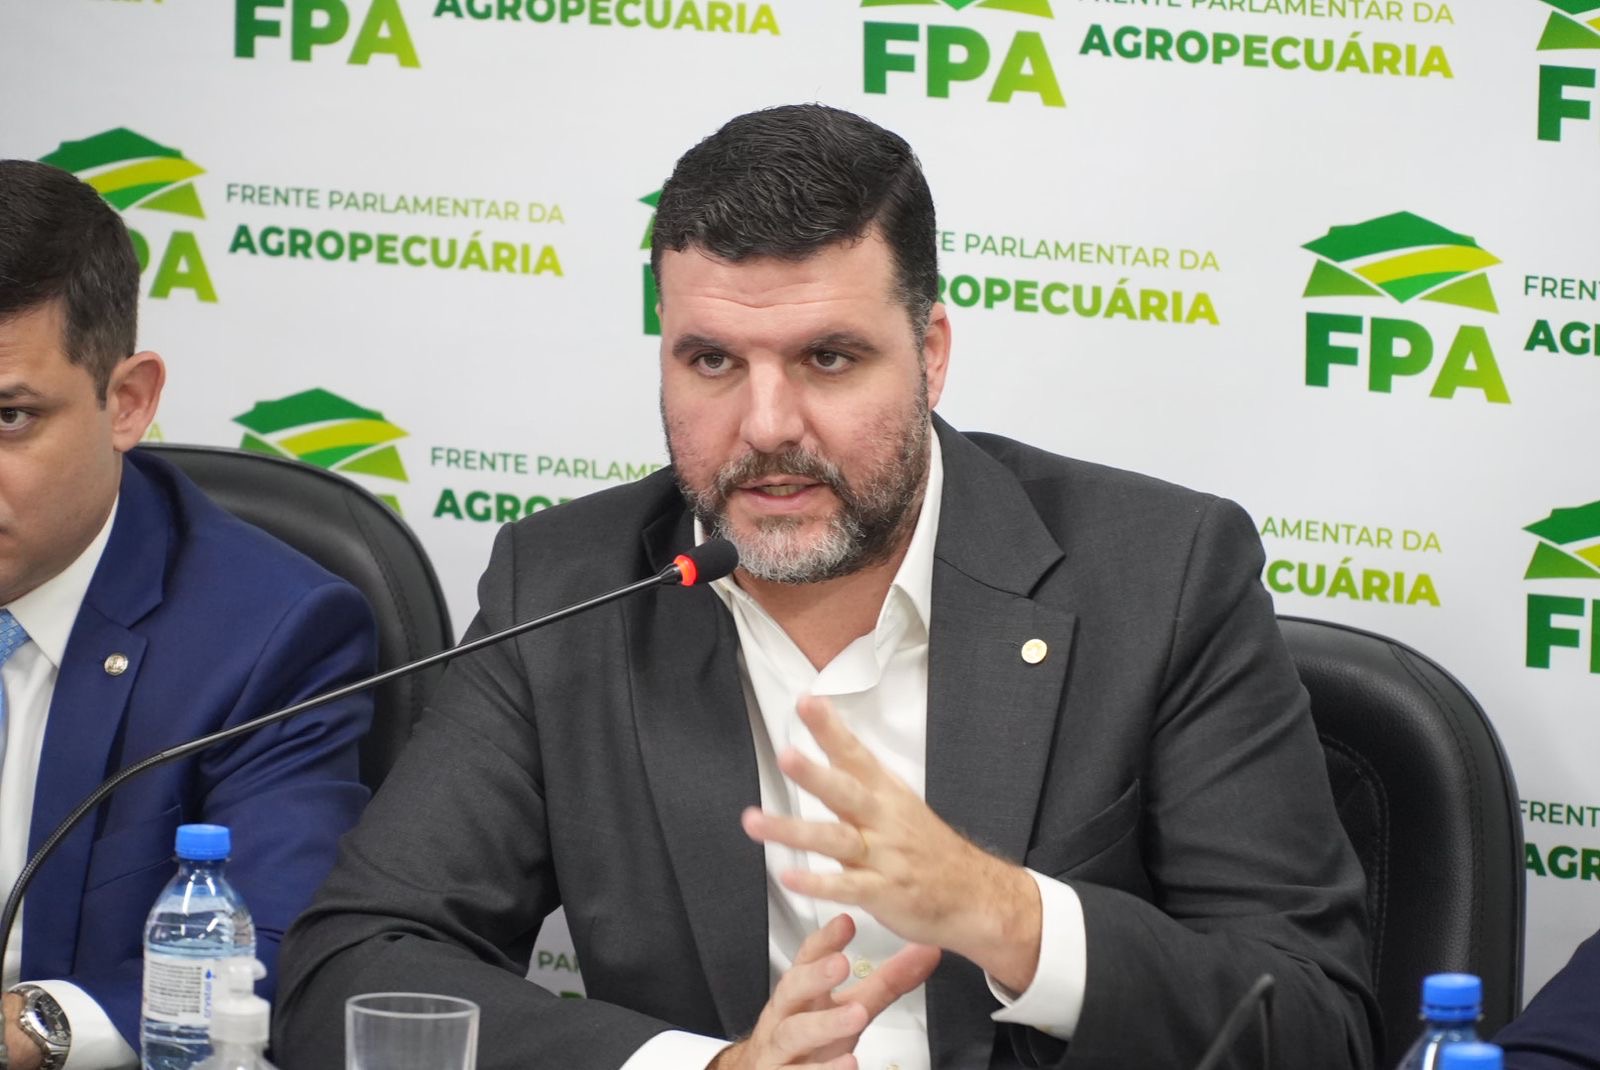 FPA pretende ZERAR alíquota de qualquer alimento, diz Lupion